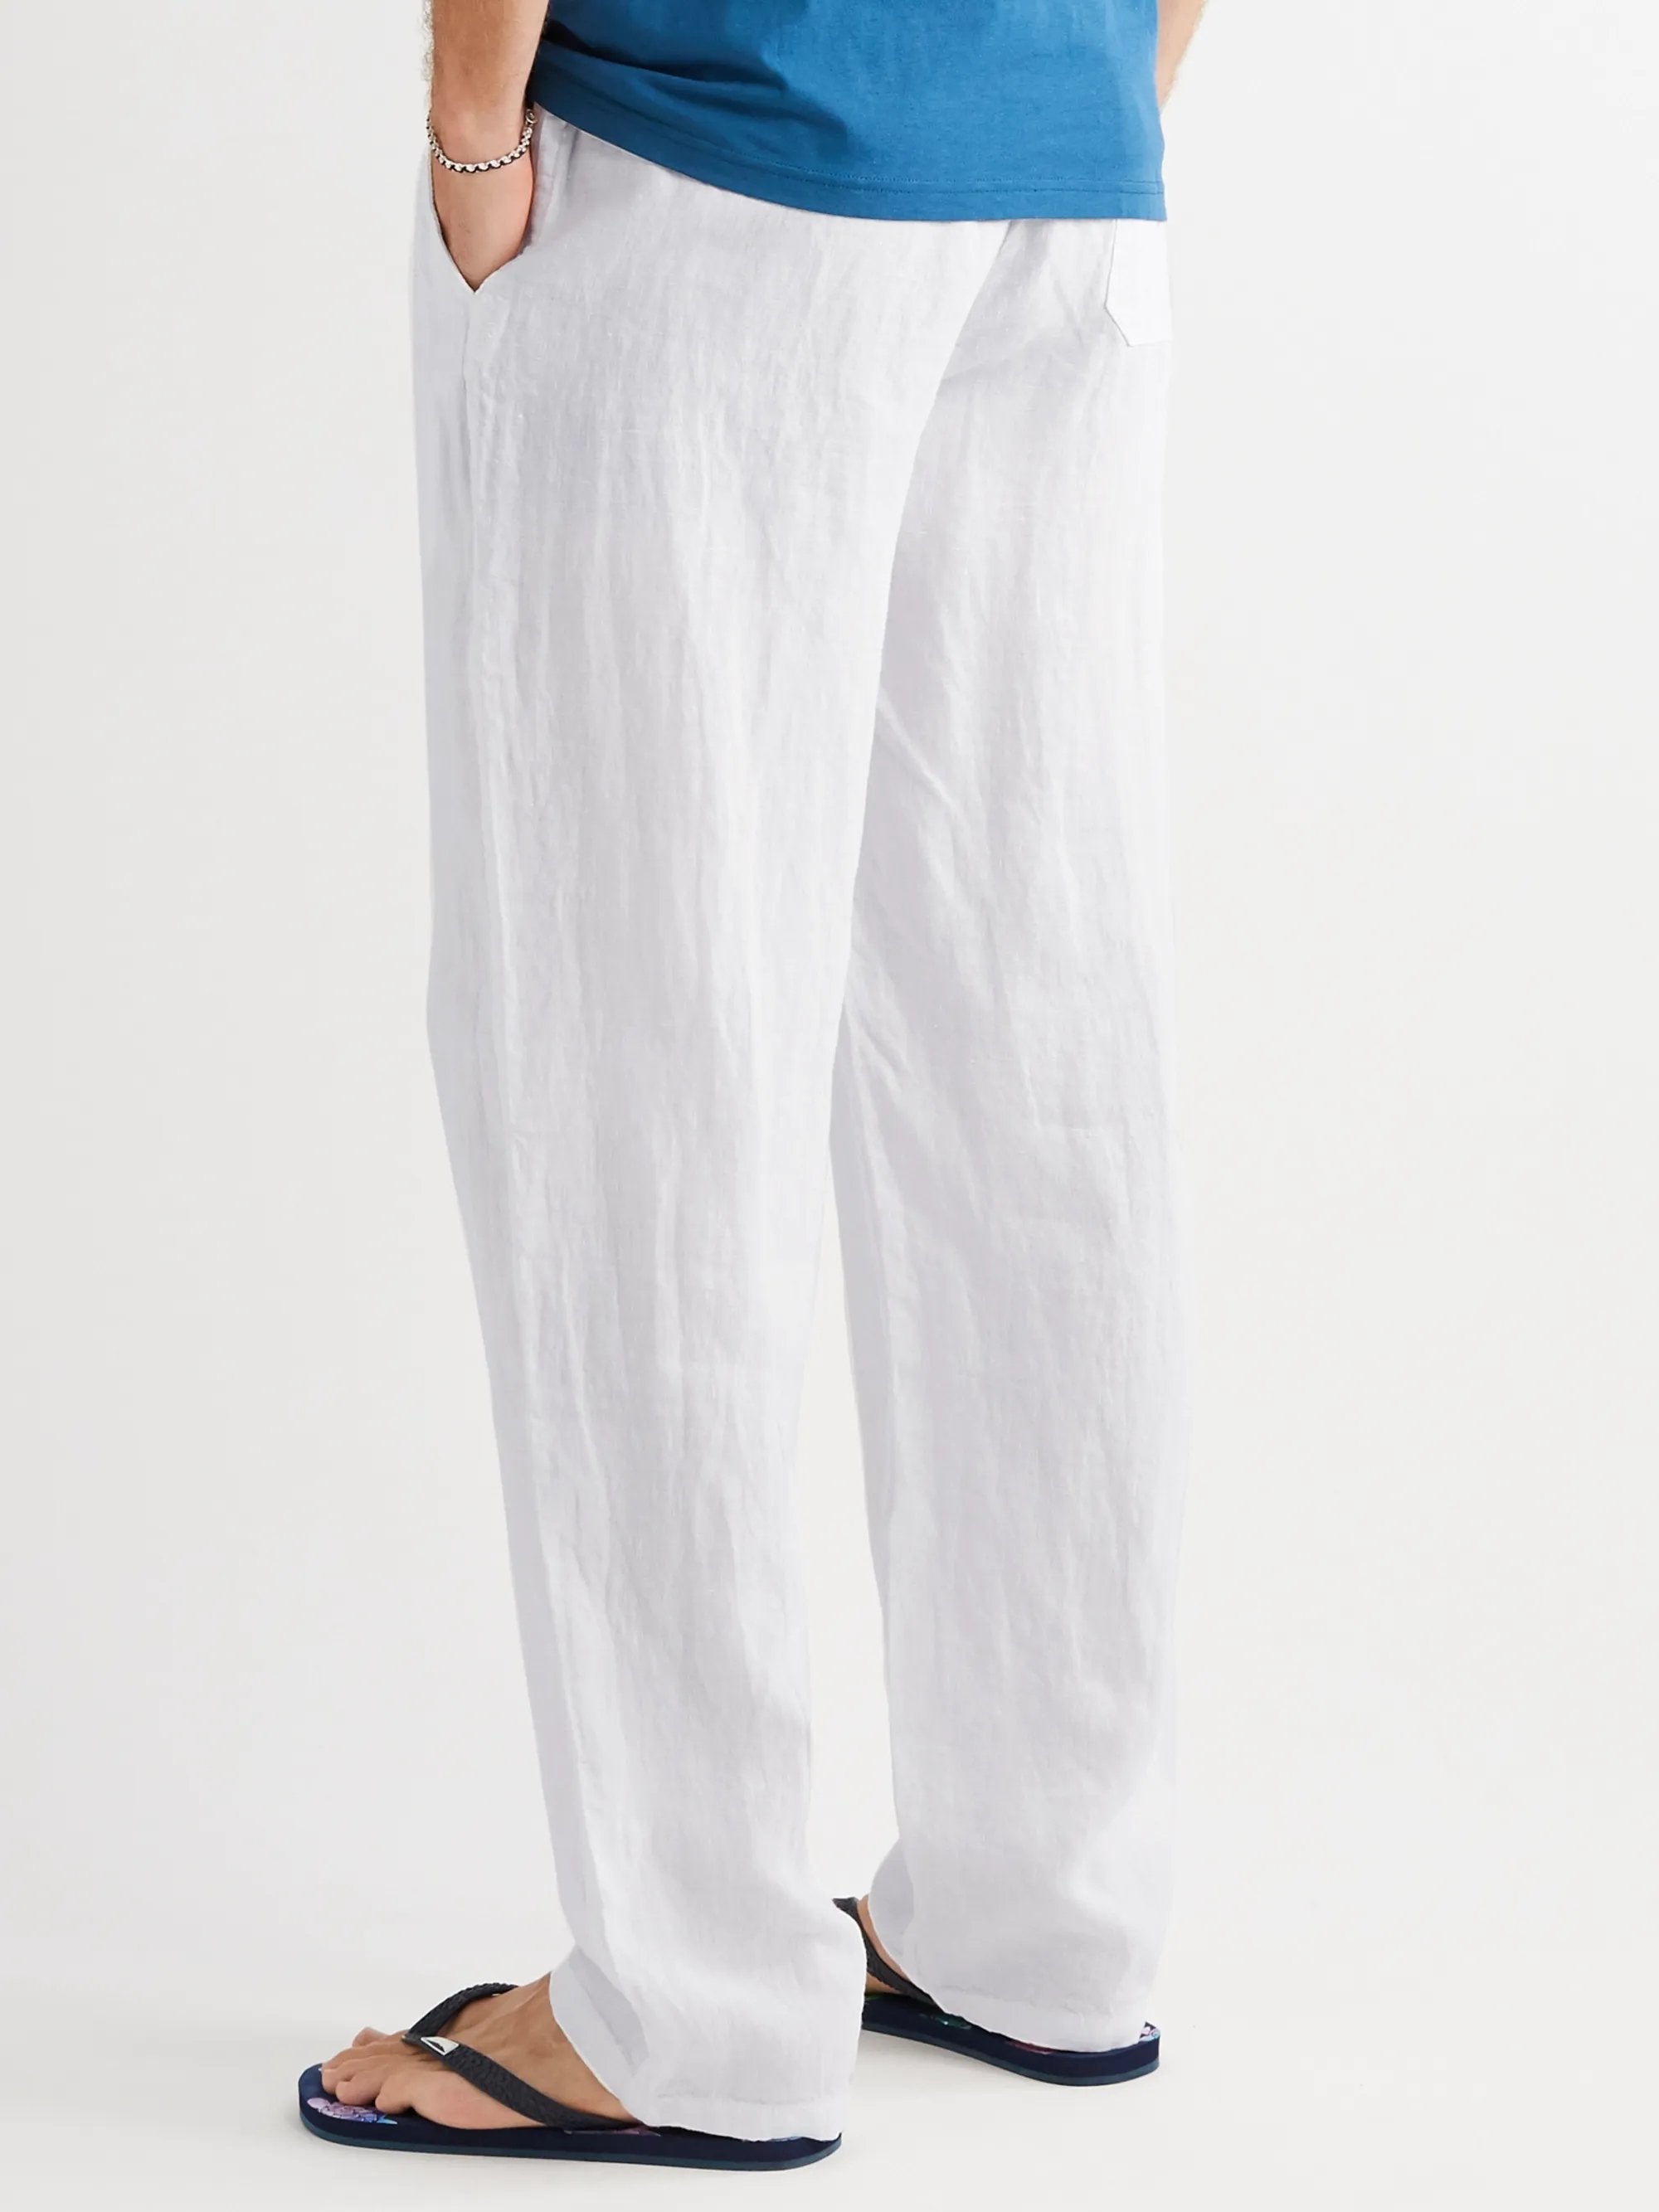 Men's Cotton Linen Style Casual Trousers